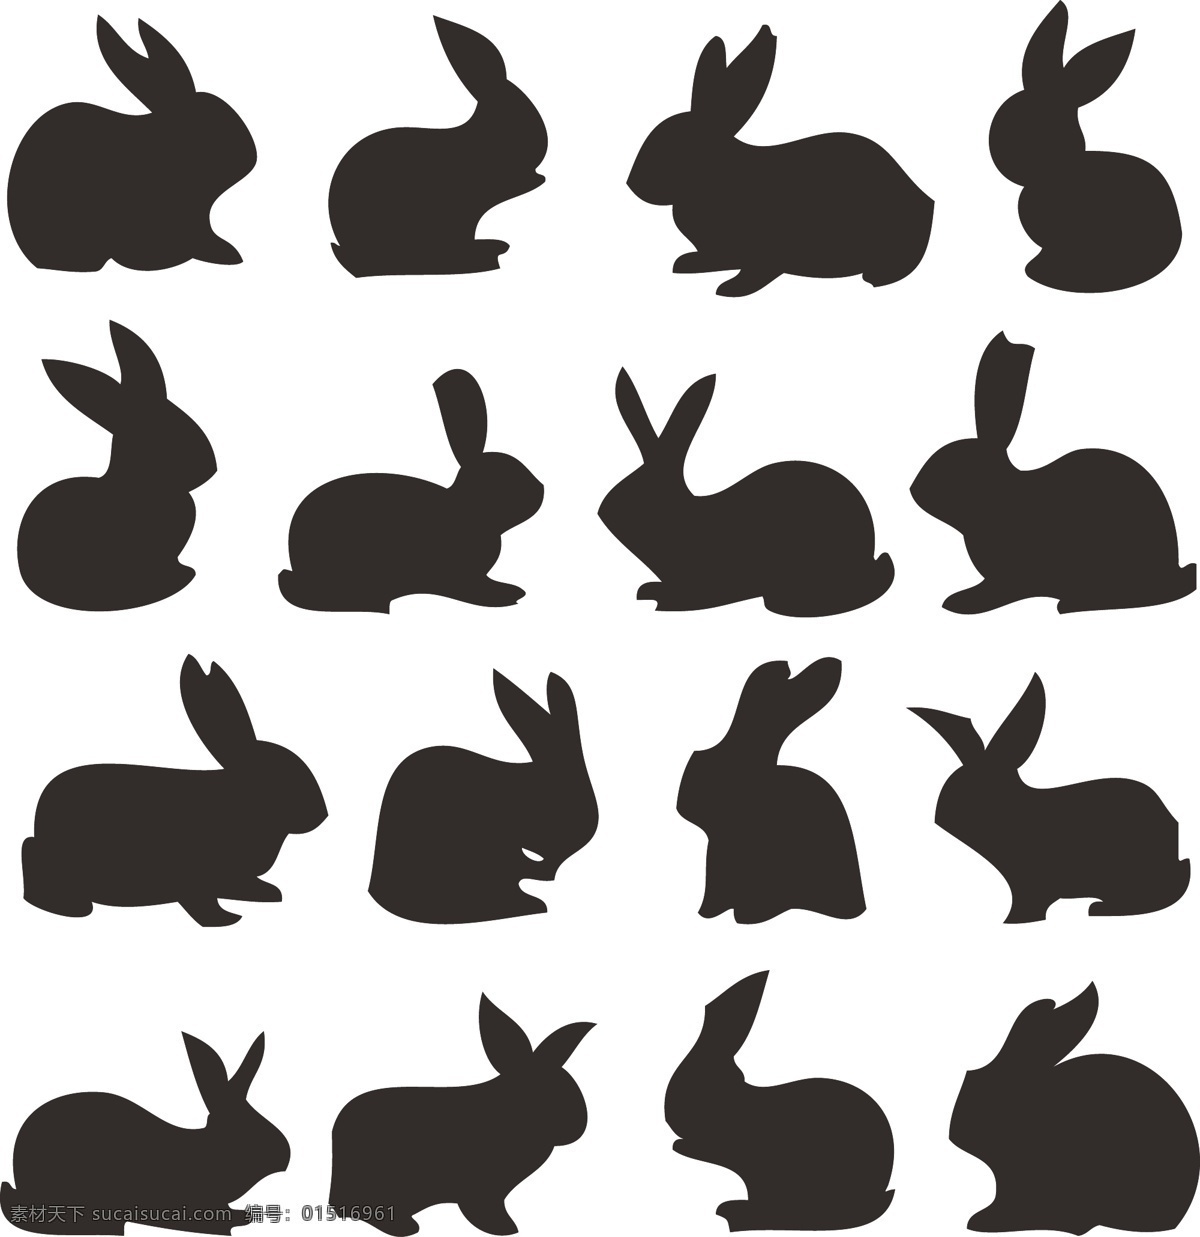 兔子剪影矢量 兔子 剪影 矢量 黑白 插圖 生物世界 野生动物